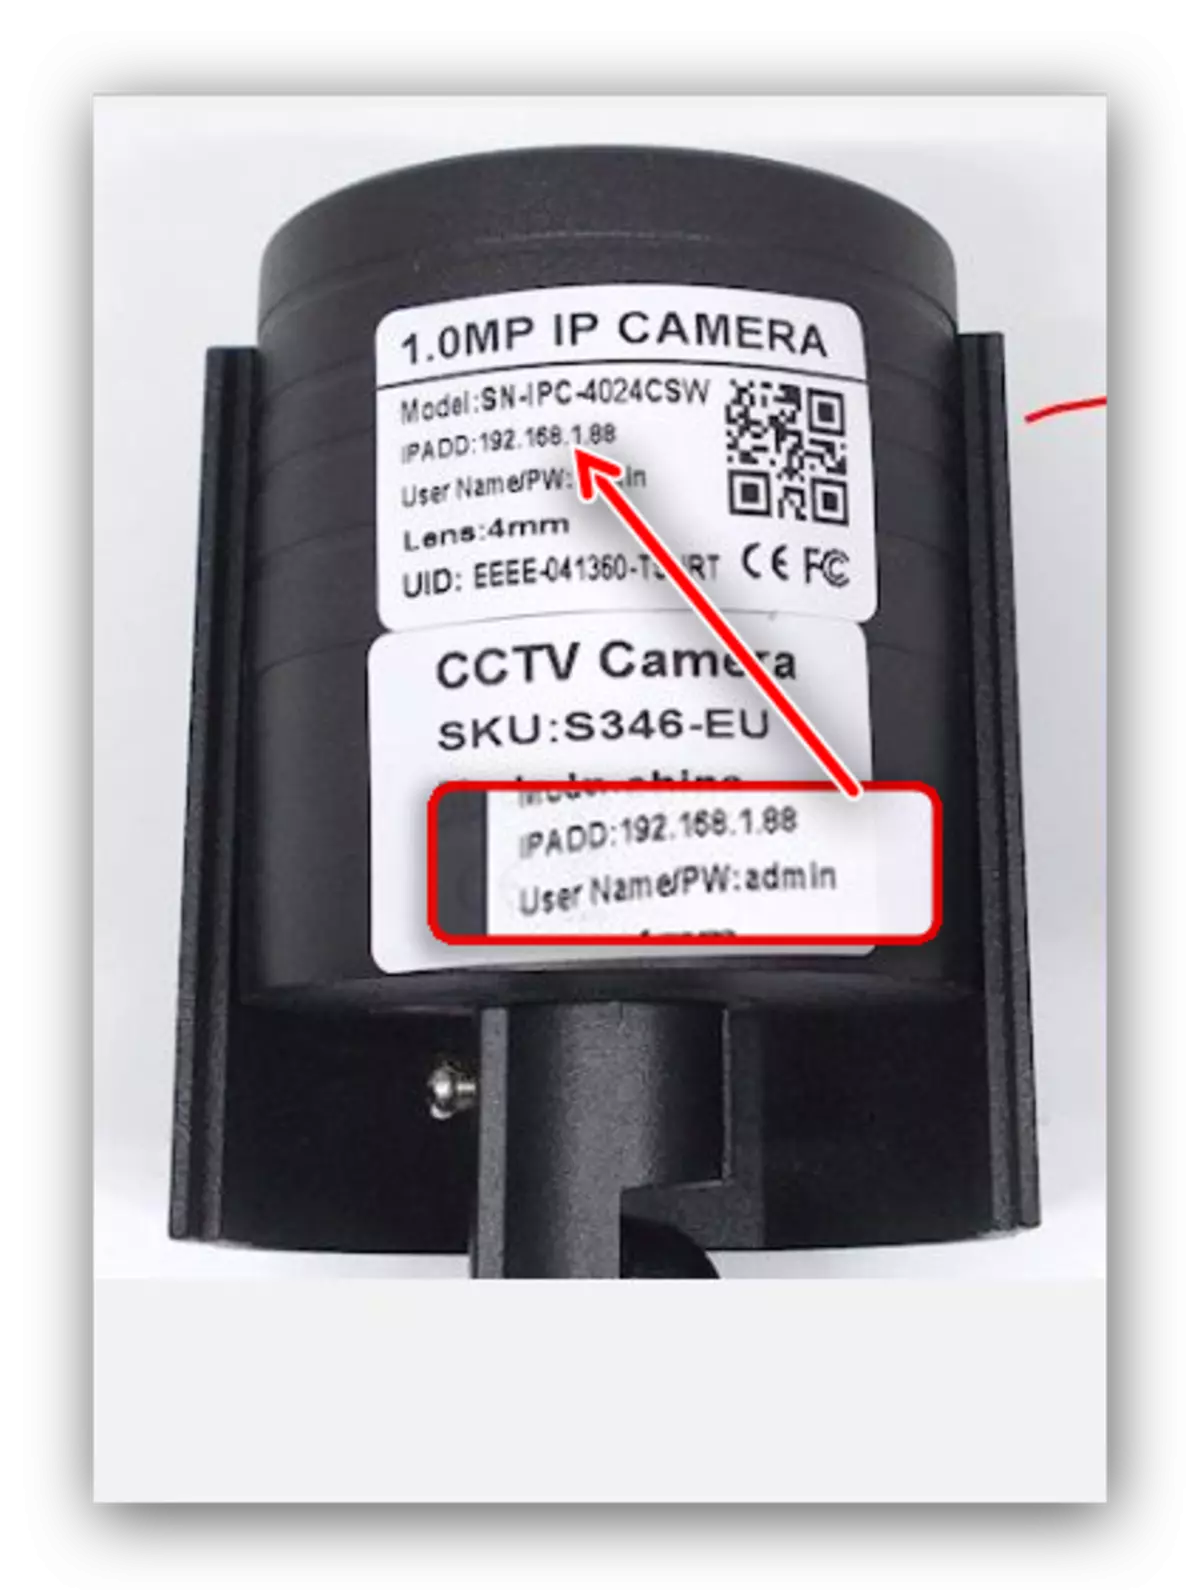 Ontdek het adres om de IP-camera via de router aan te sluiten